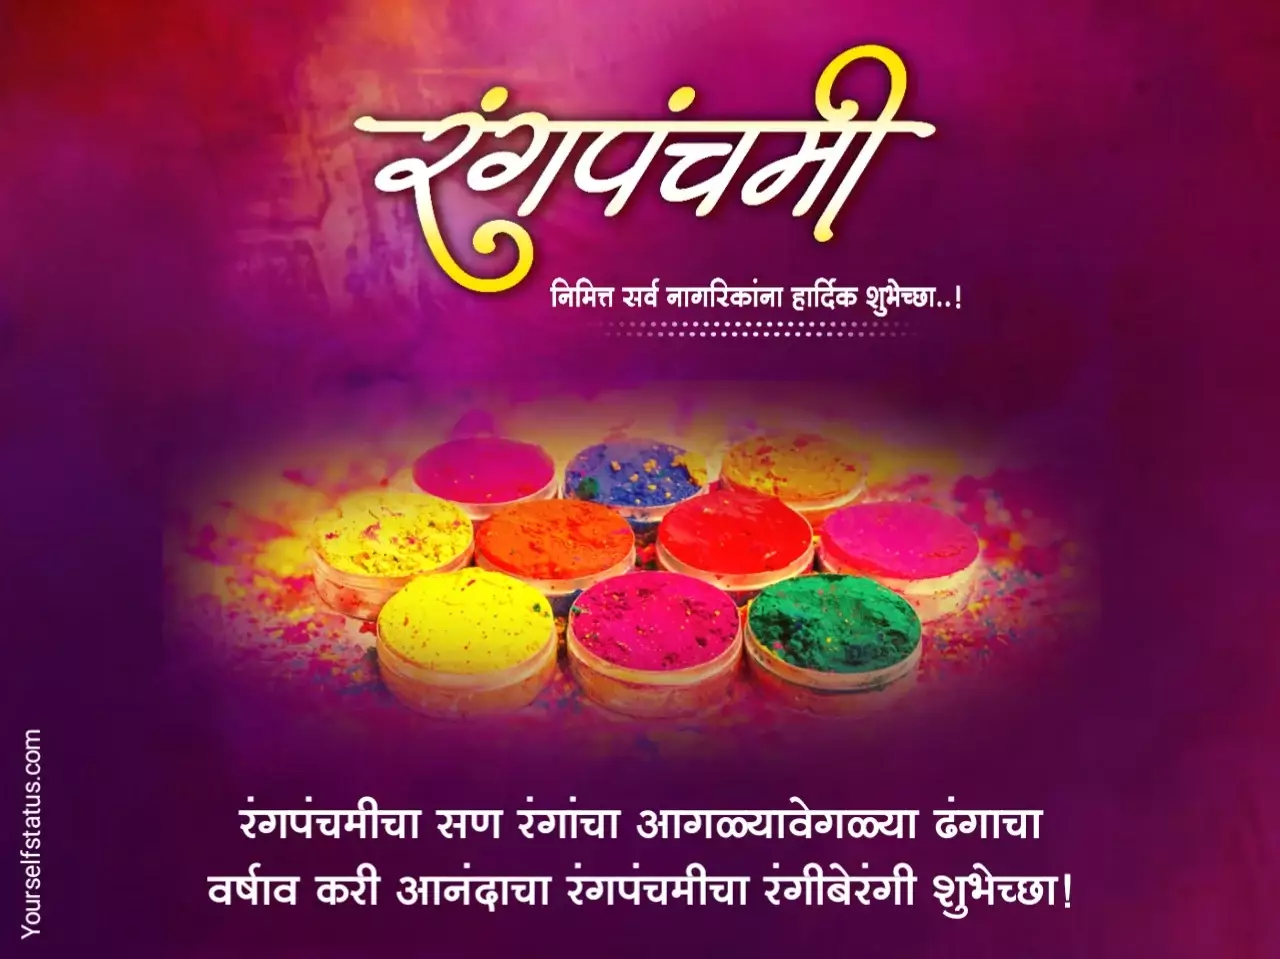 Rang panchami wishes in marathi